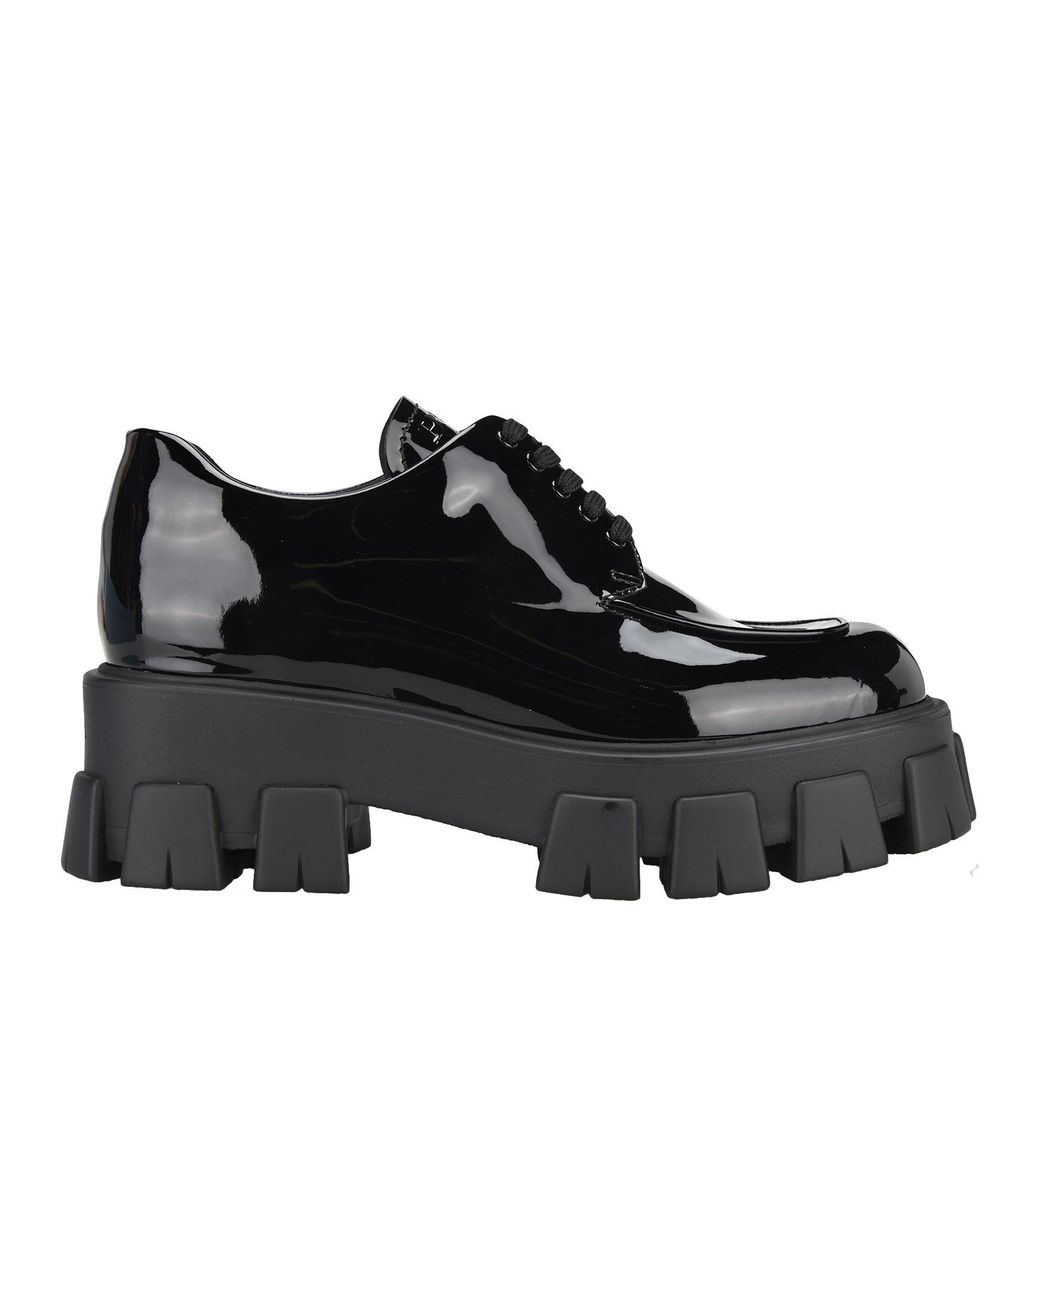 Prada Monolith Derby Shoes in Black | Lyst